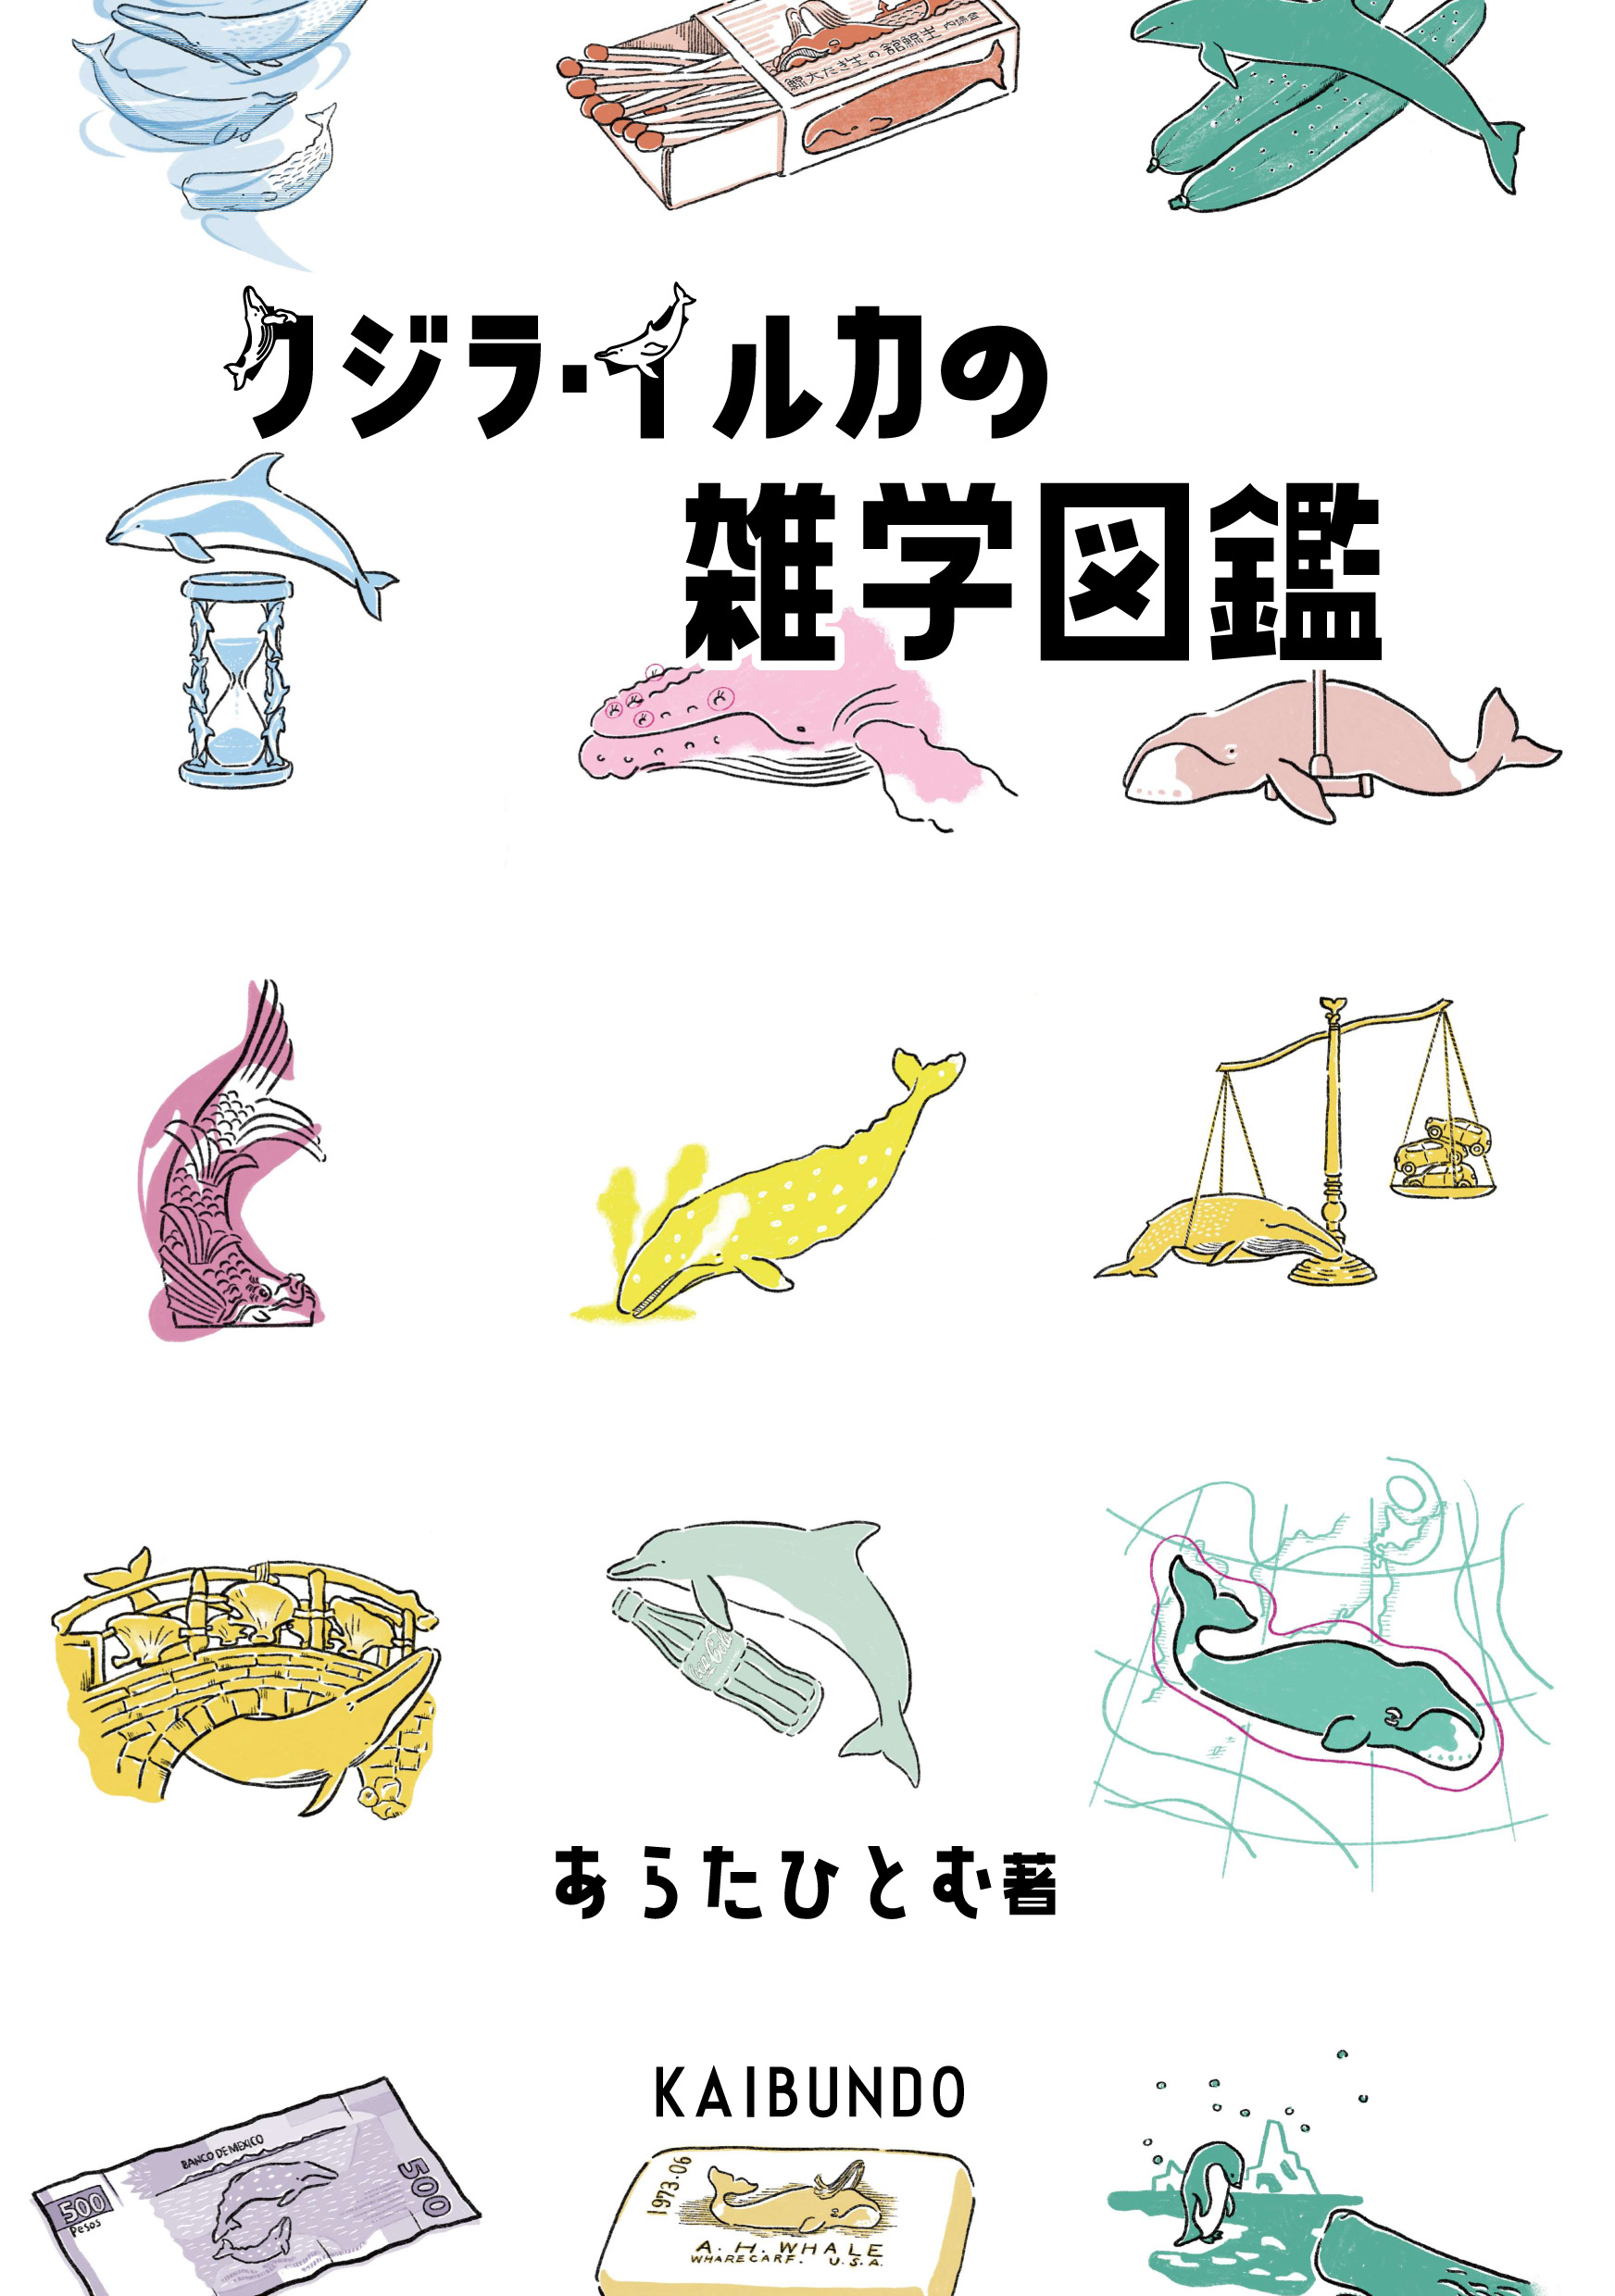 クジラ・イルカの雑学図鑑の商品画像